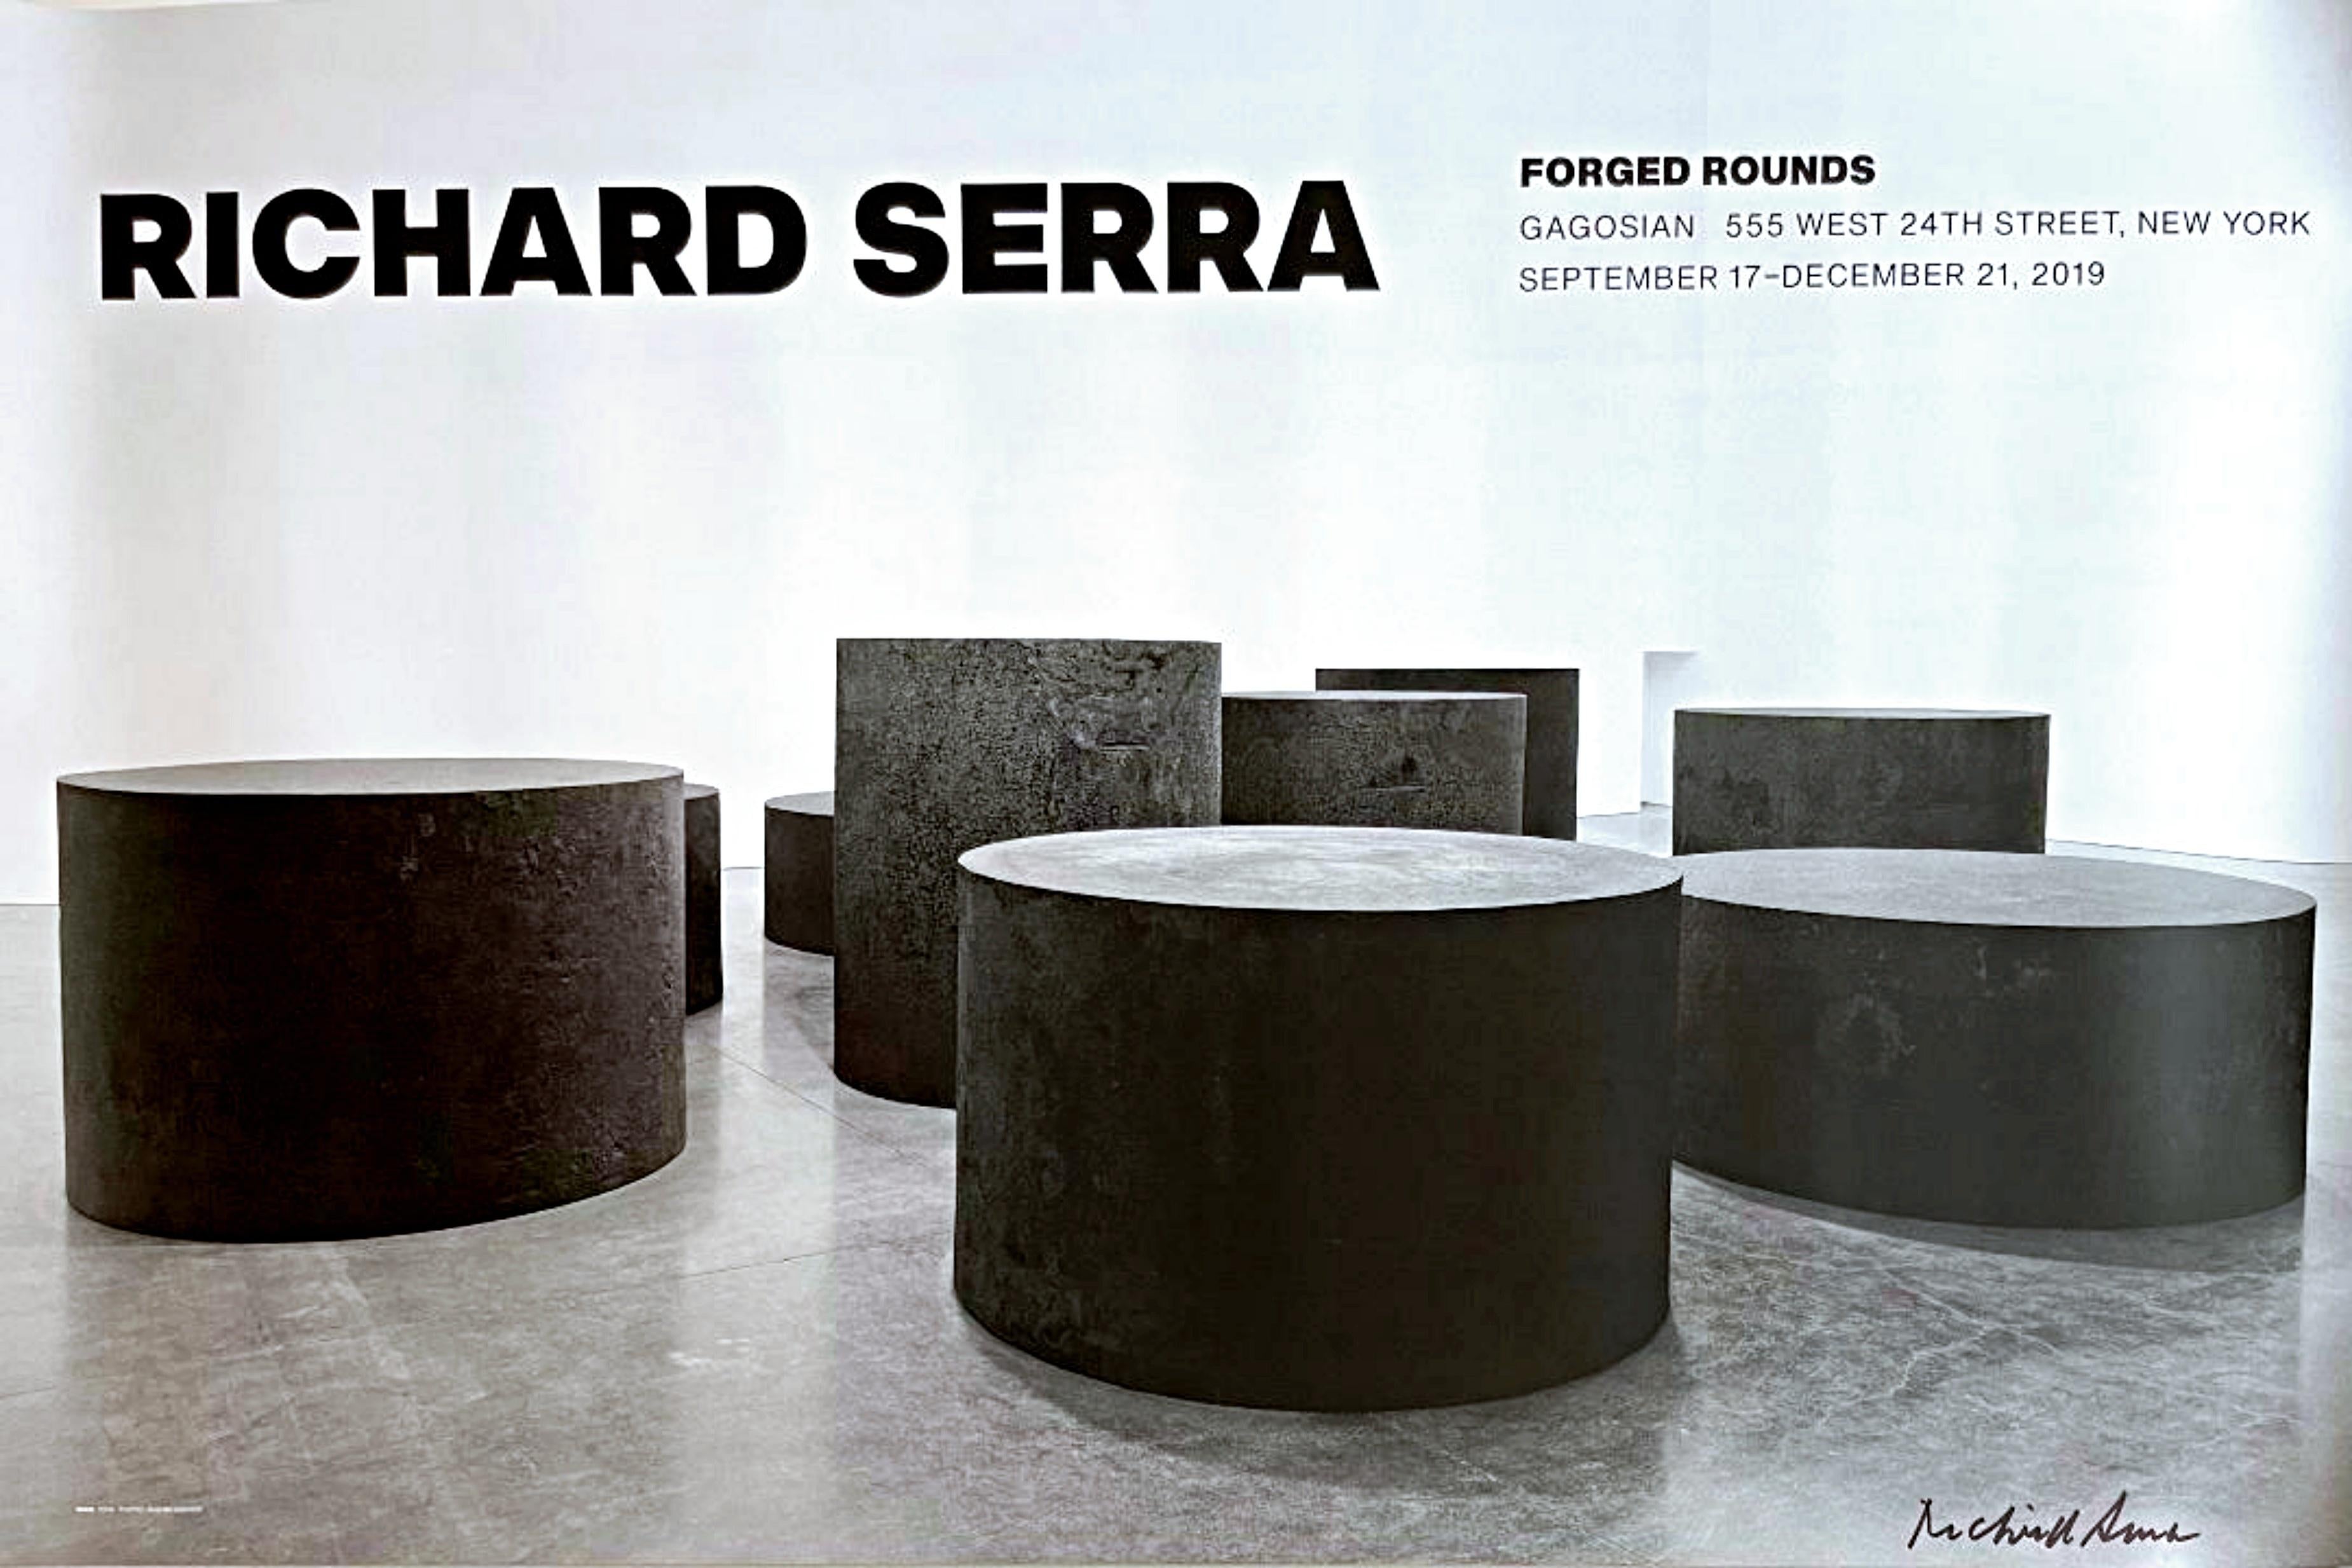 Affiche d'exposition de la galerie Gagosian Forged Rounds, signée à la main par Richard Serra 